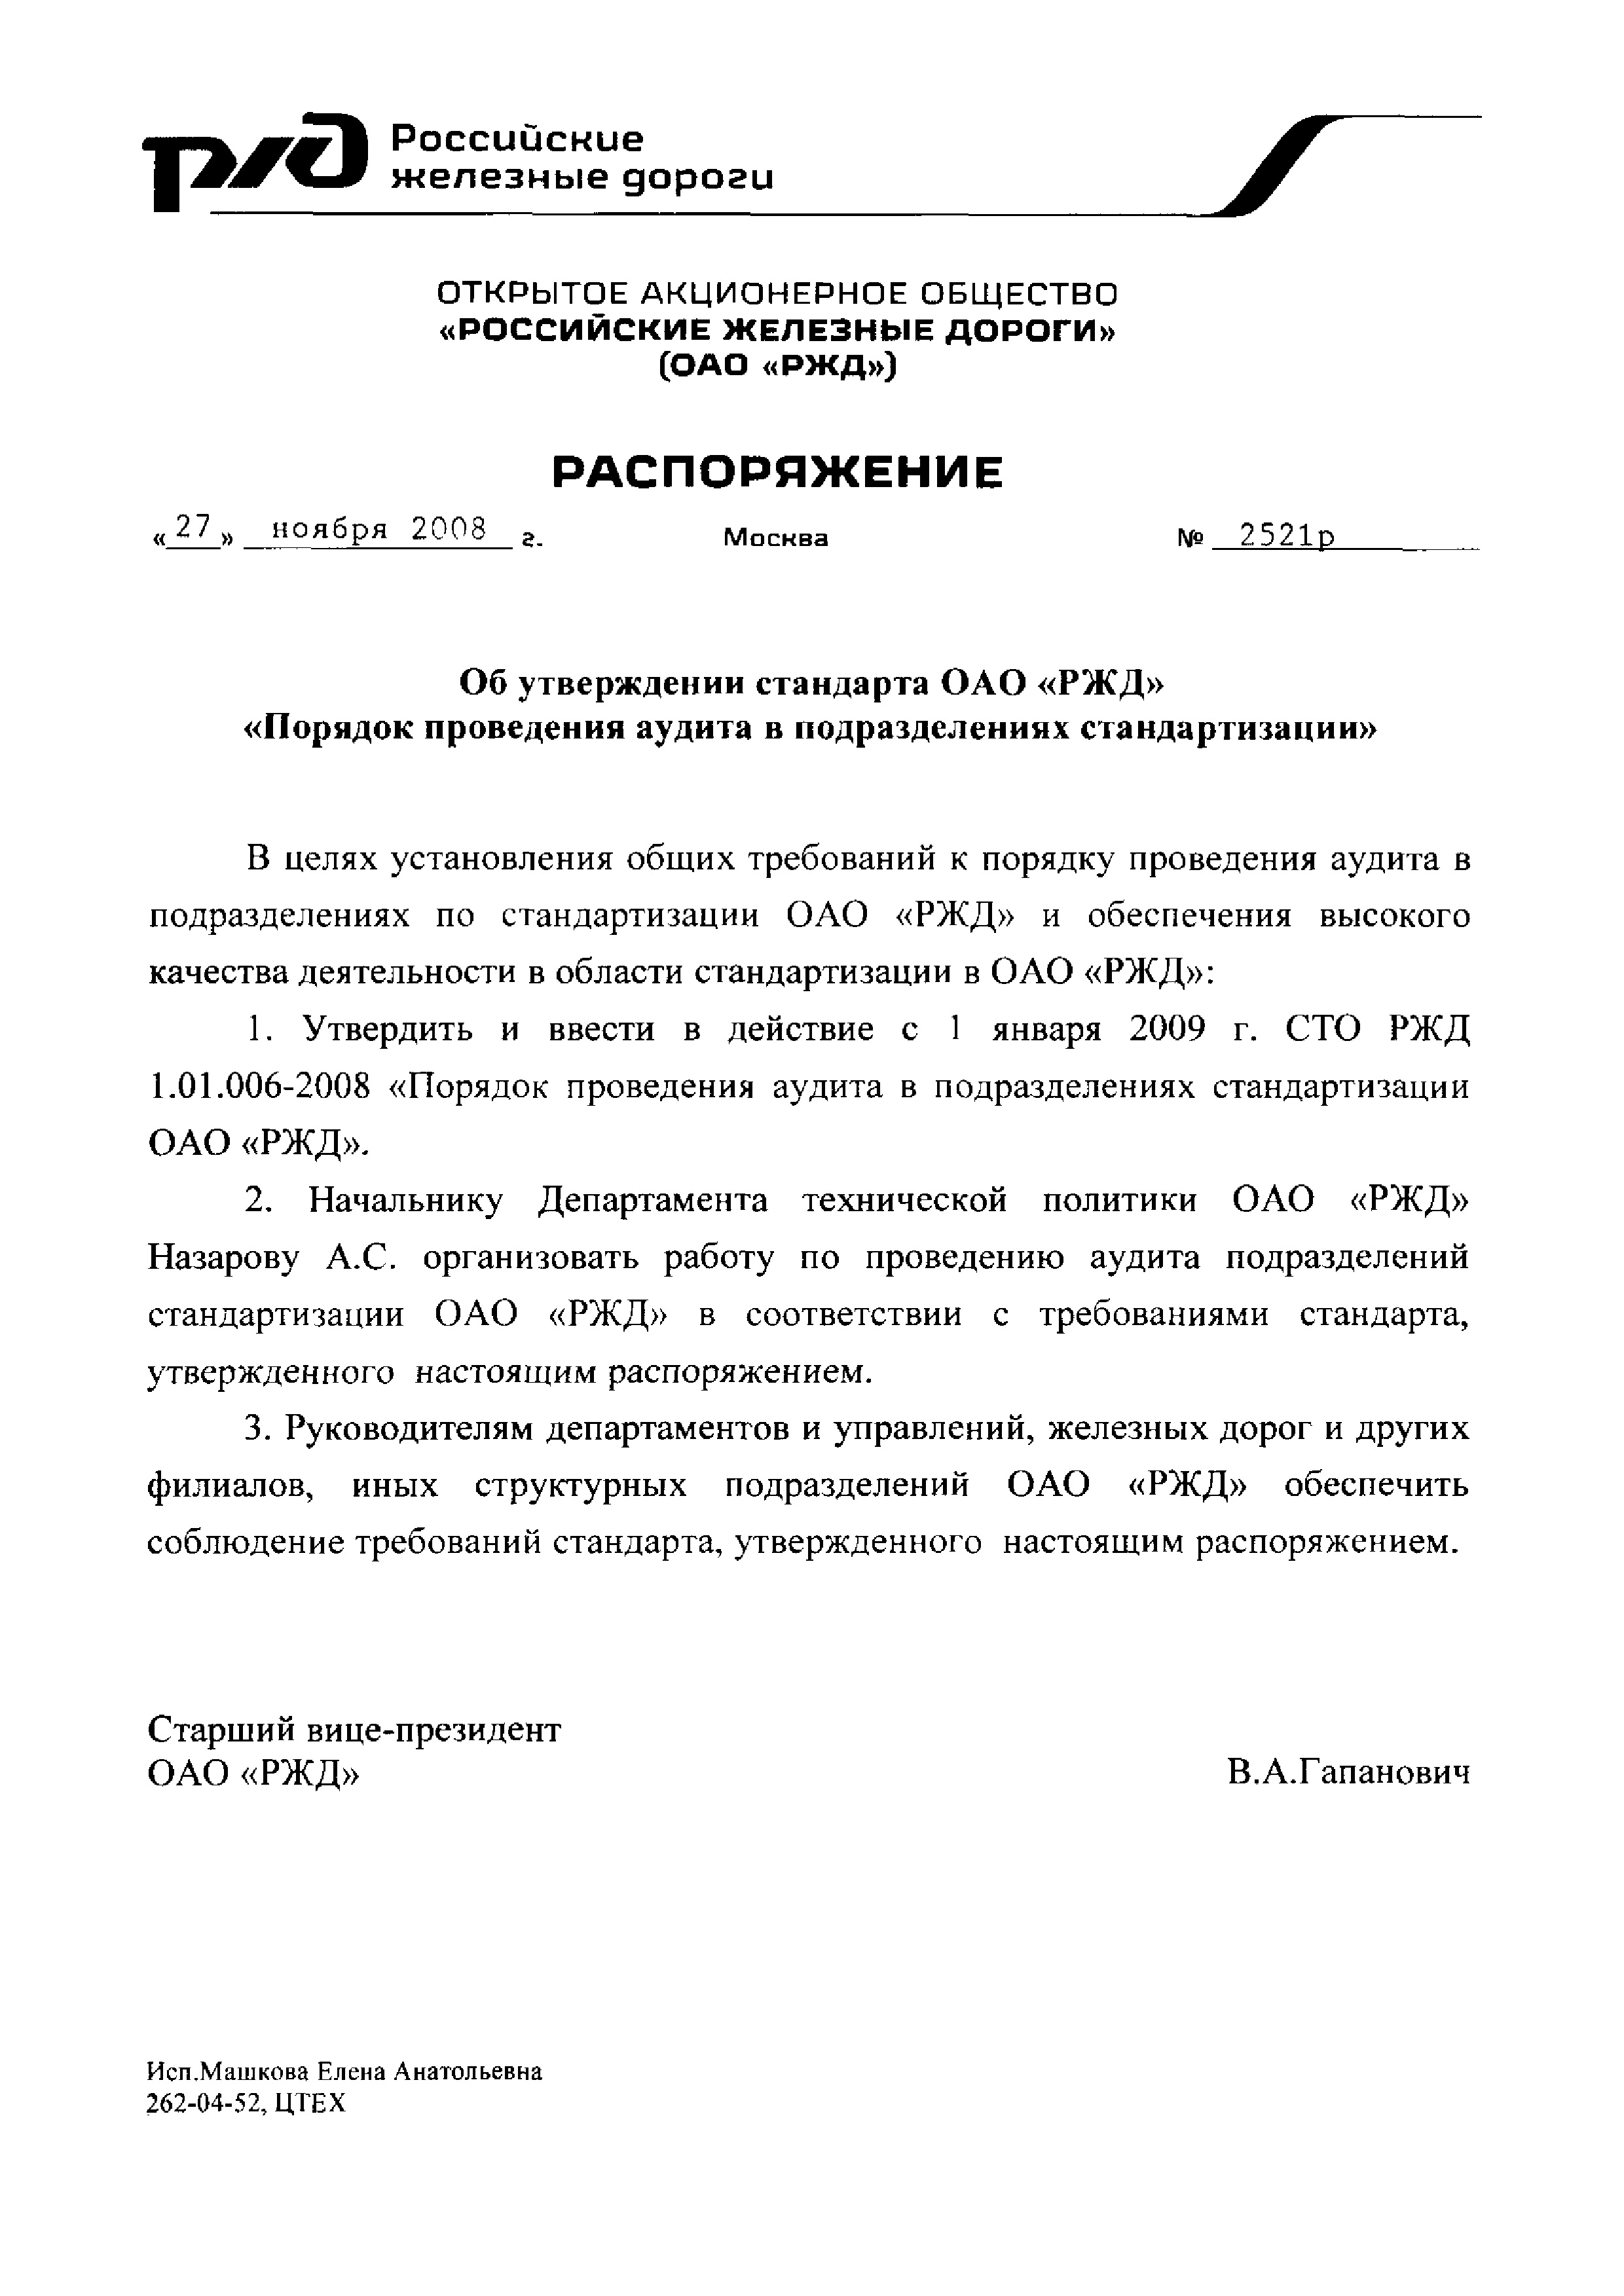 СТО РЖД 1.01.006-2008